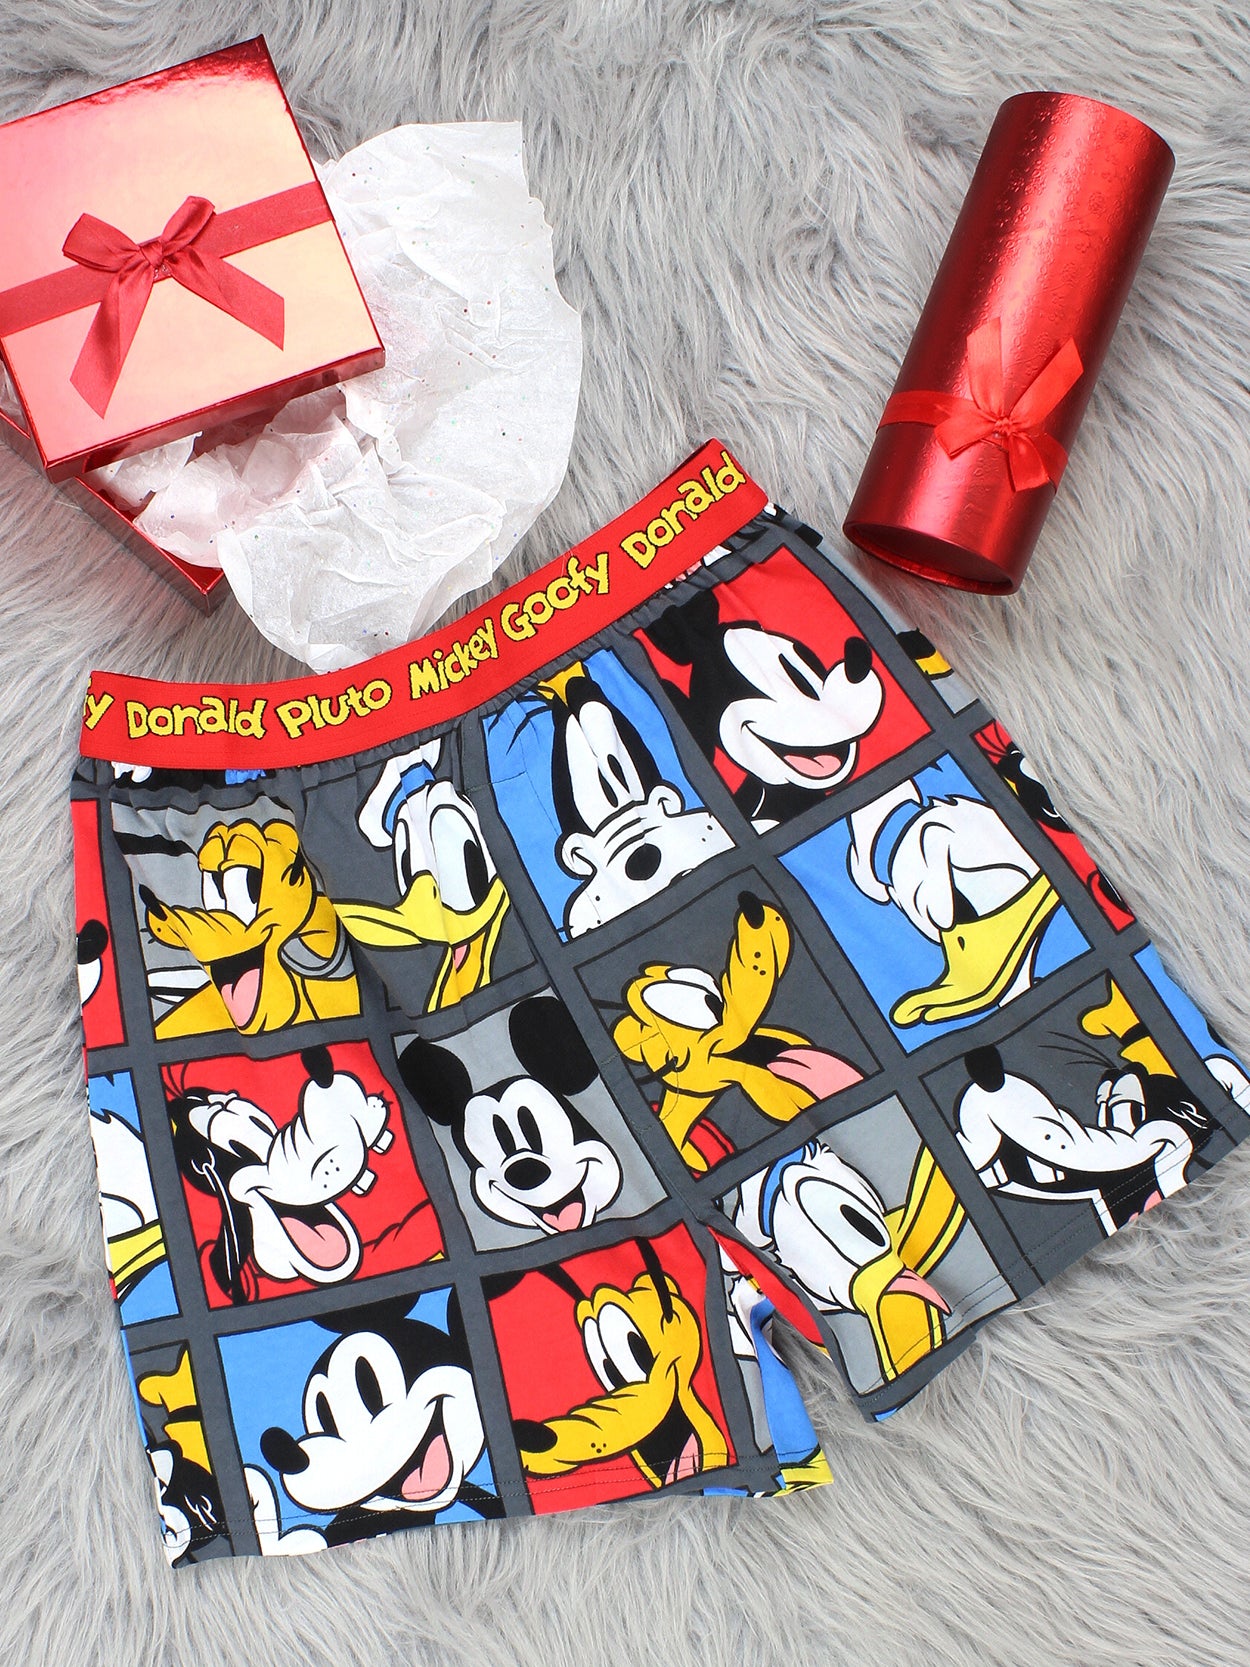 Minnie Mouse Briefs Girls Disney Minnie Mouse Shorties Underwear